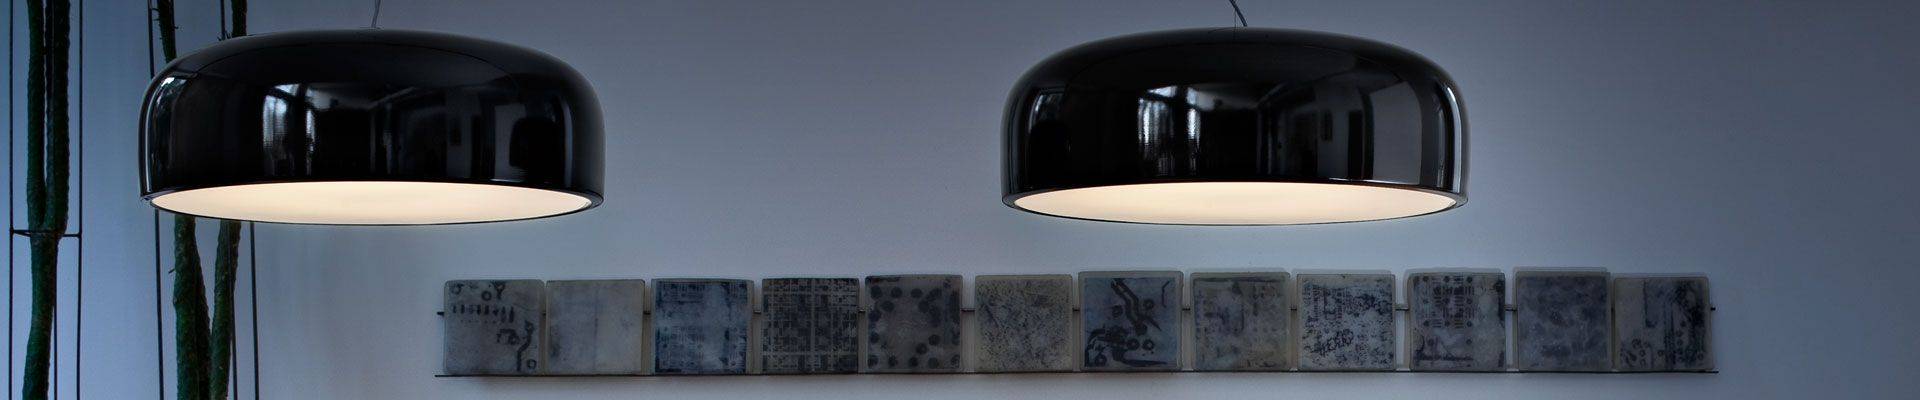 Flos lampen outlet | Design verlichting goedkoop kopen? | Flinders